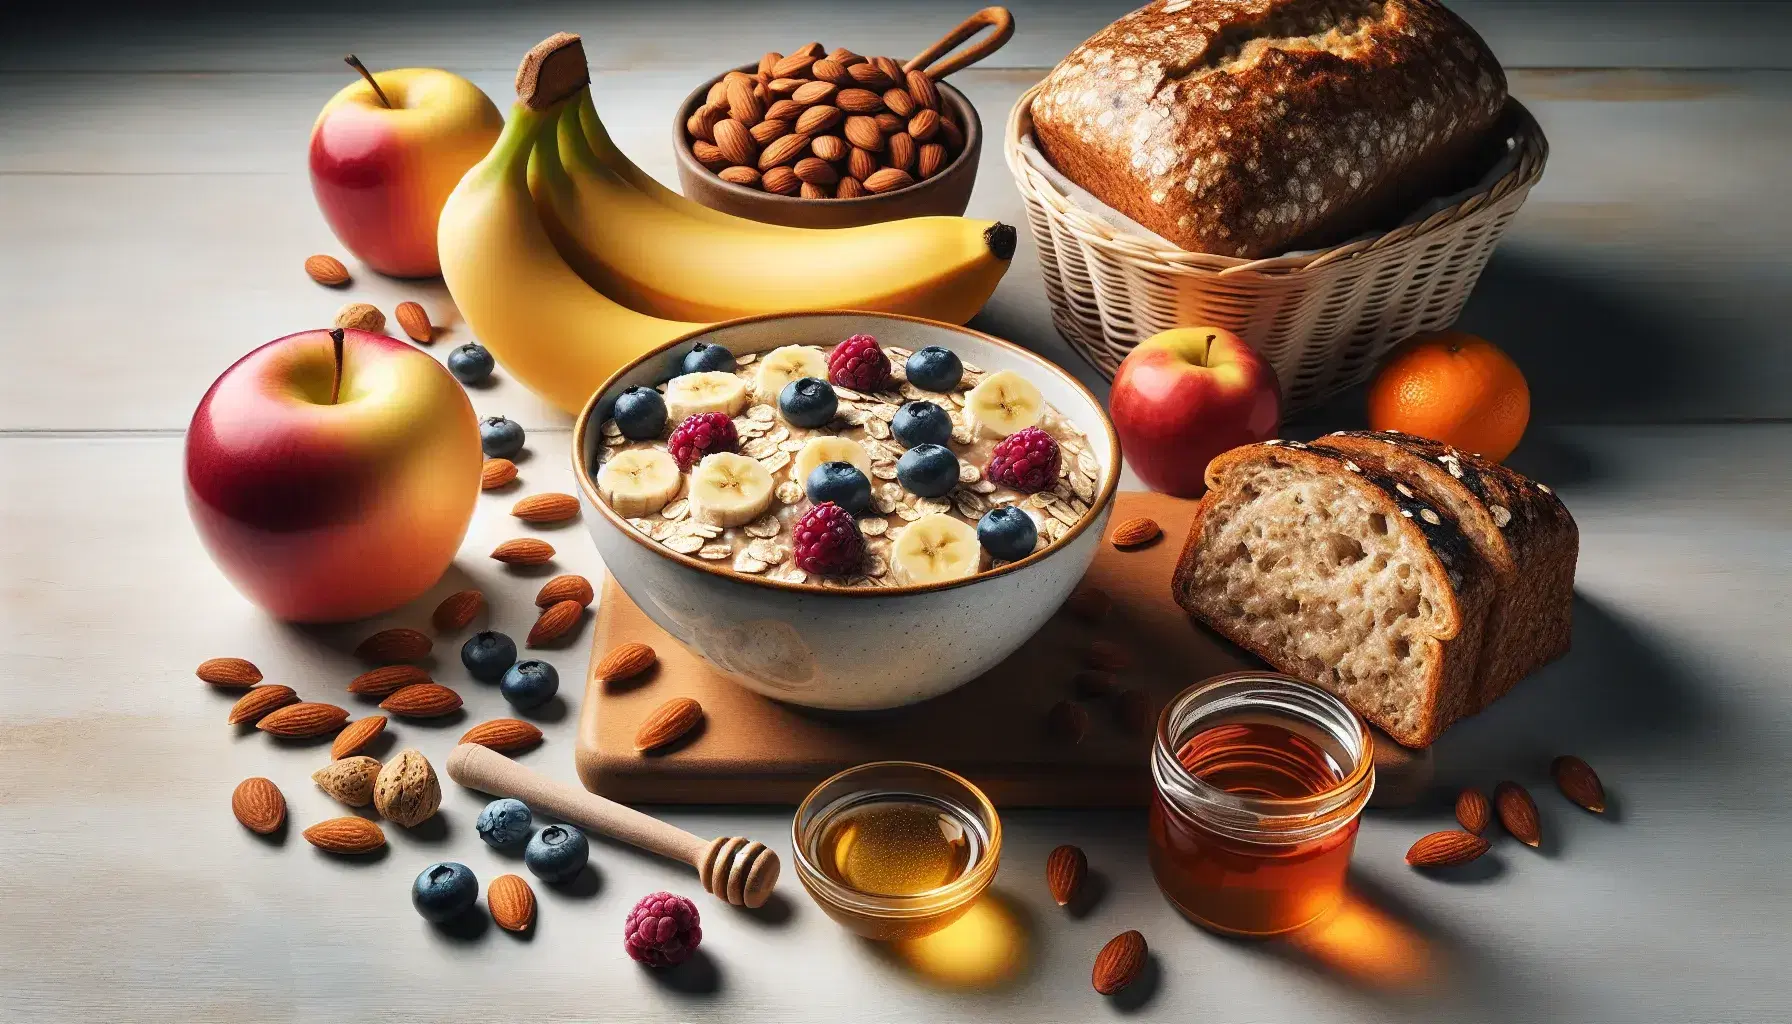 Desayuno saludable con avena, plátano, bayas, pan integral con miel, almendras, manzana roja, uvas verdes y naranja en superficie de madera.